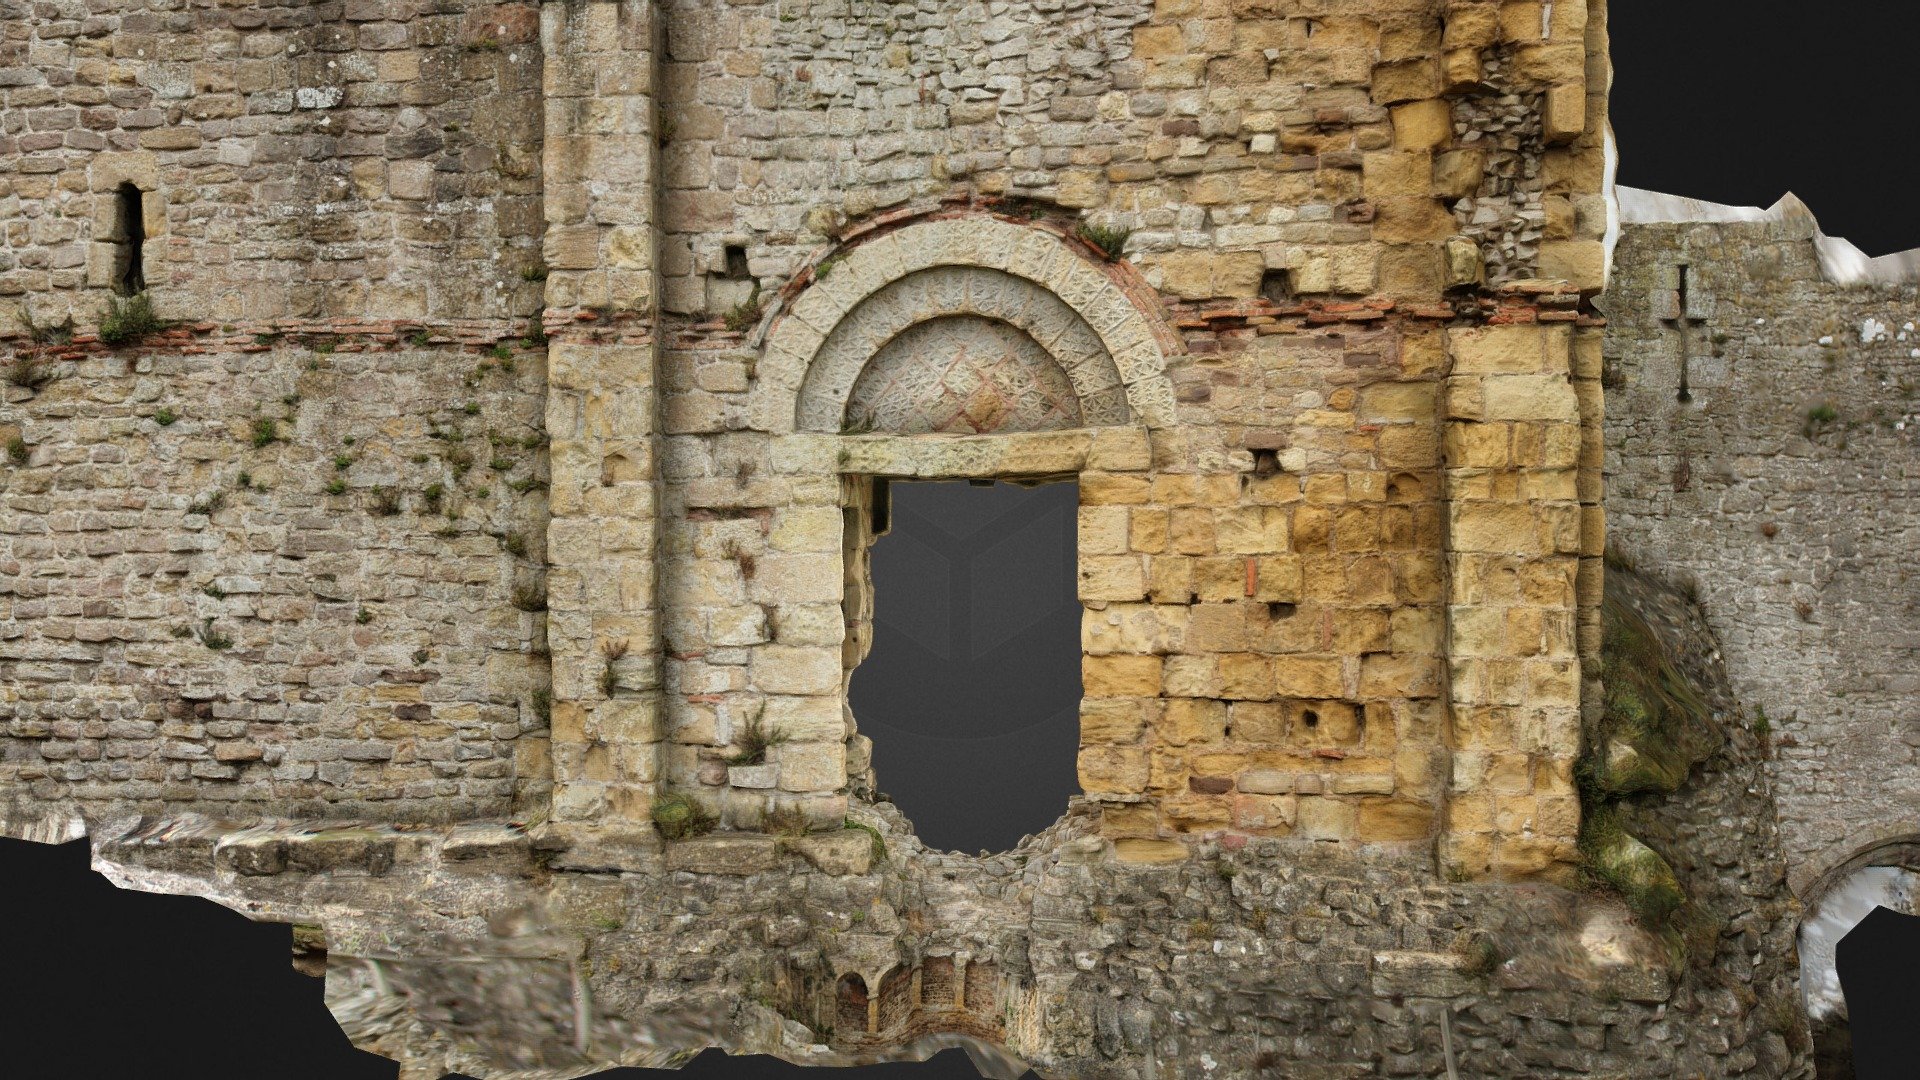 Chepstow Castle Romanesque portal